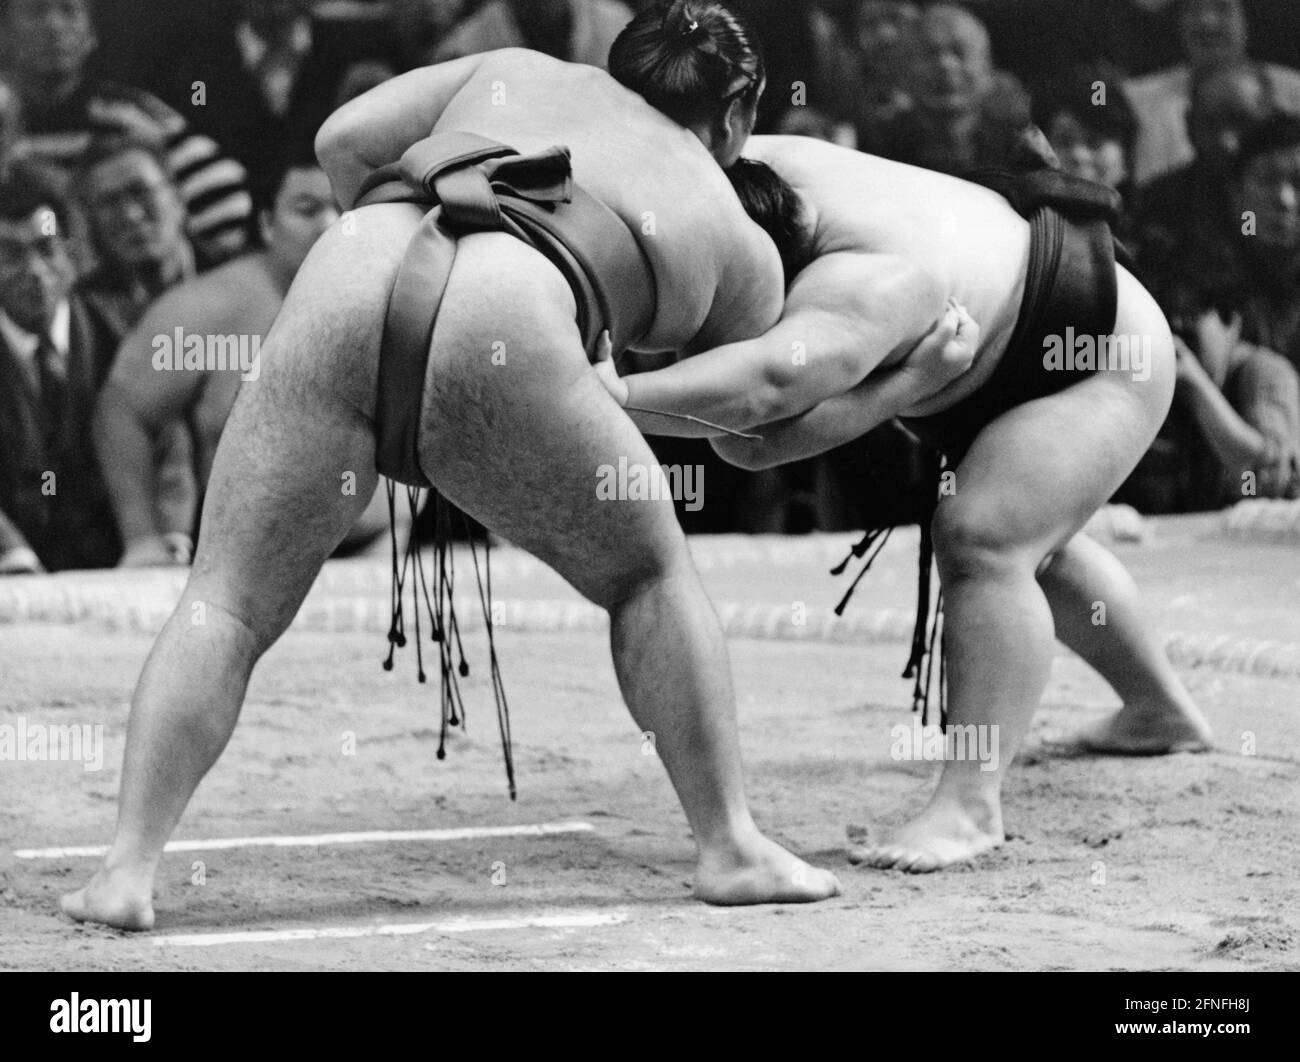 Zwei Sumo-Ringer während eines Spiels in Osaka. [Automatisierte Übersetzung]  Stockfotografie - Alamy